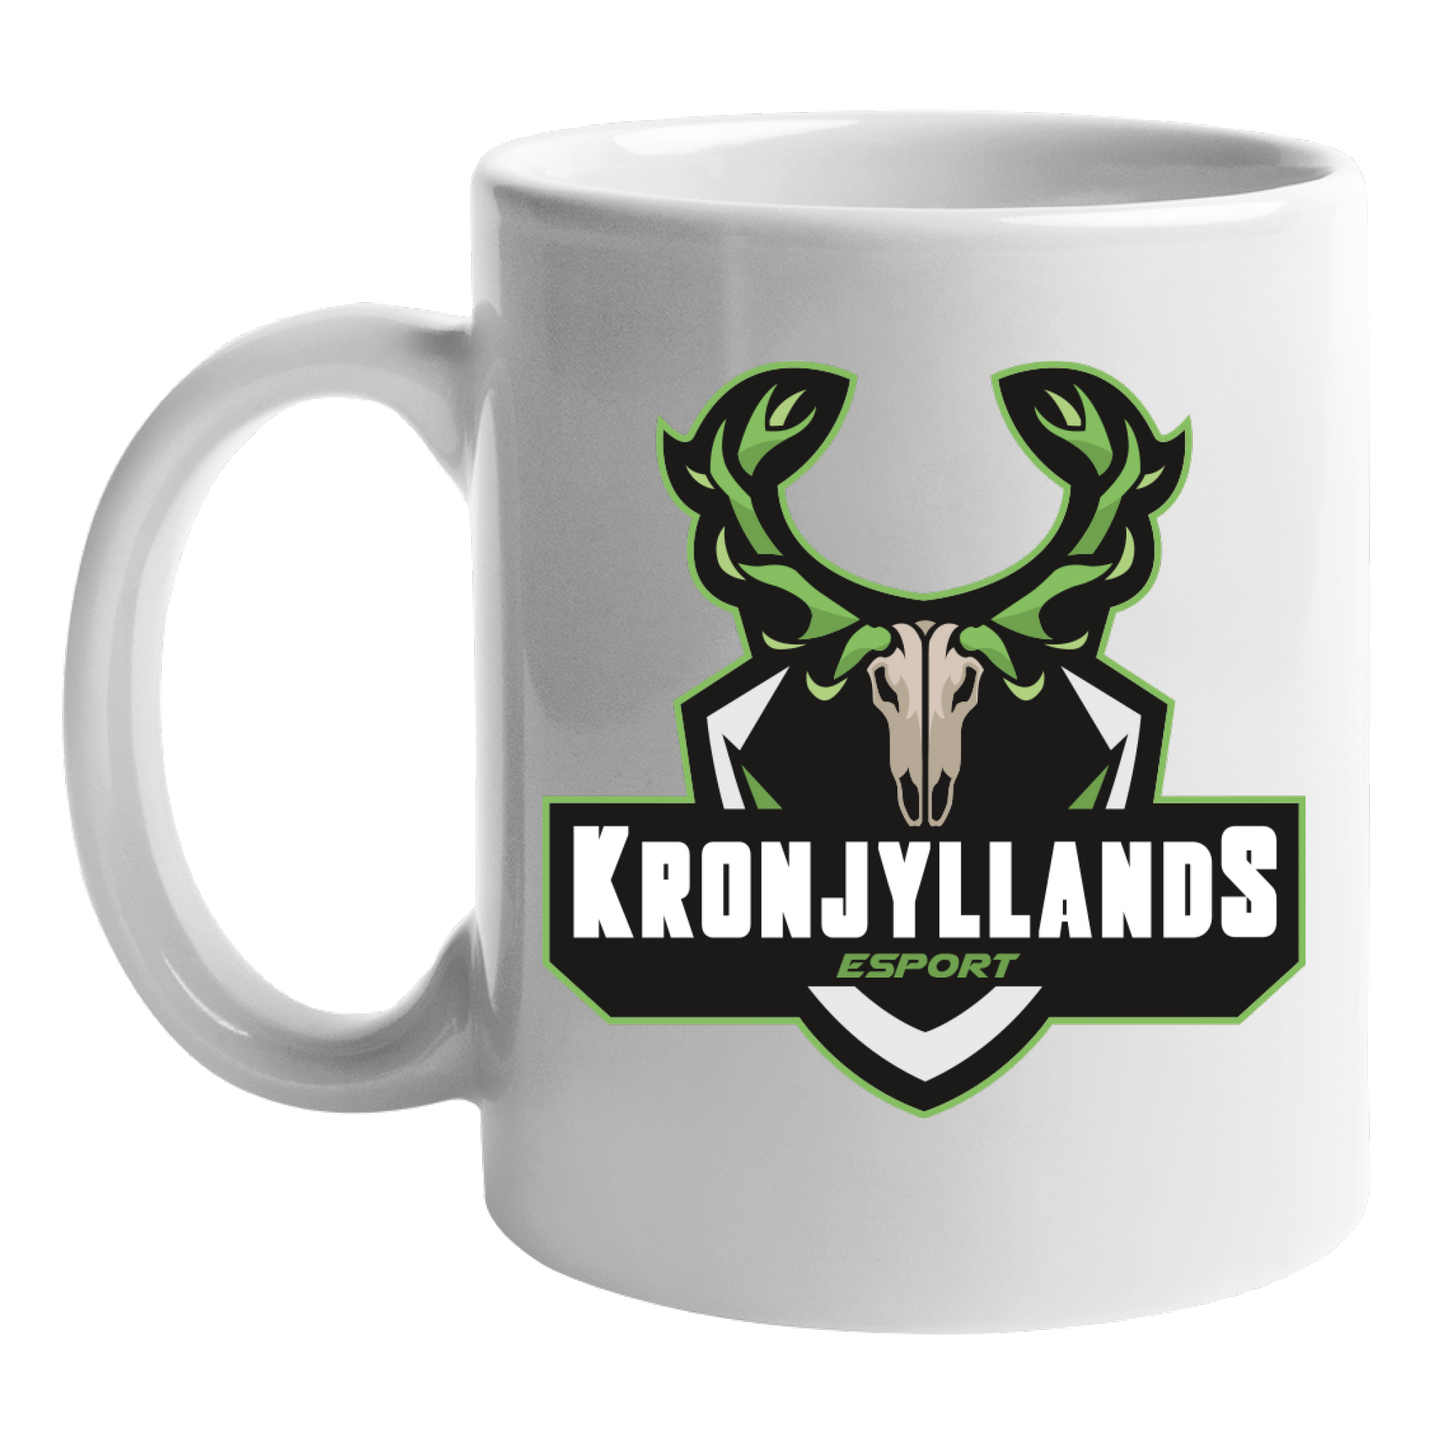 Kop med klub logo - Kronjyllands Esport